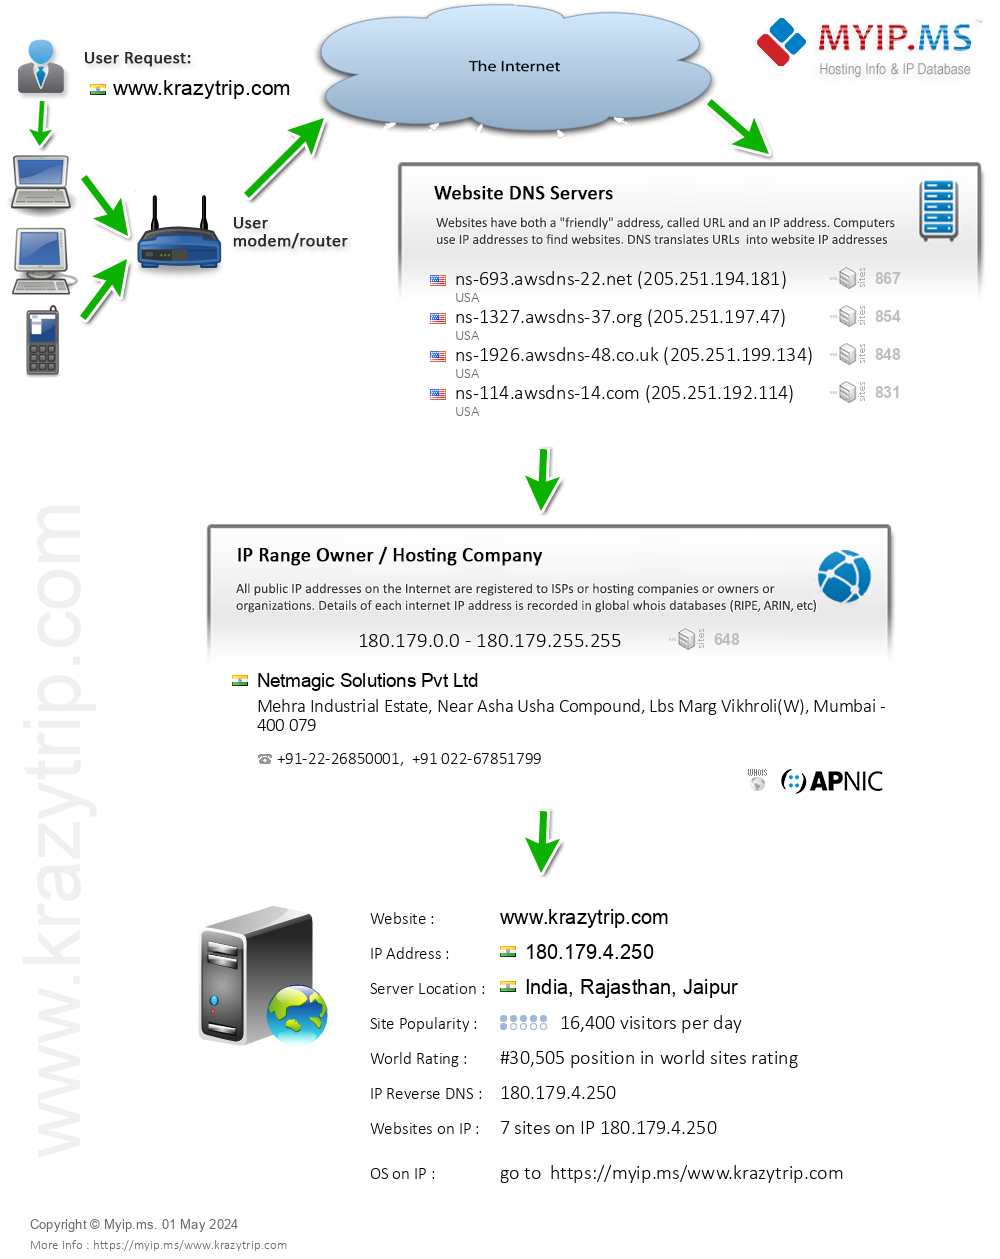 Krazytrip.com - Website Hosting Visual IP Diagram